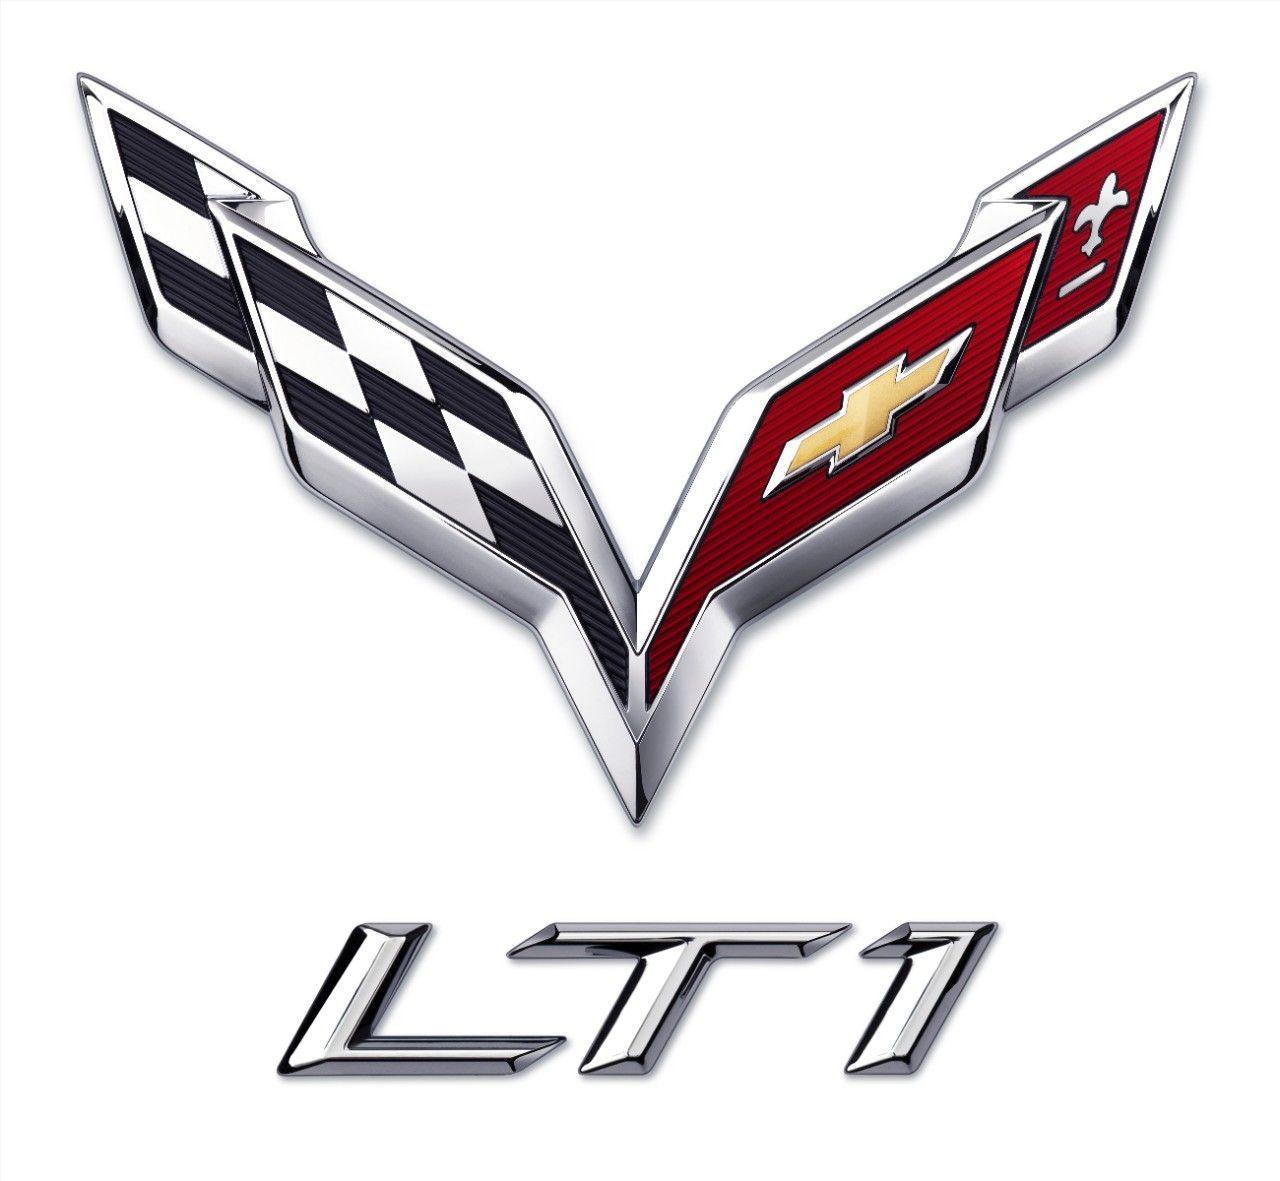 Chevy Corvette Stingray Logo - The all new 2014 C7 Corvette LT1 Engine logo. | 2014 Corvette ...